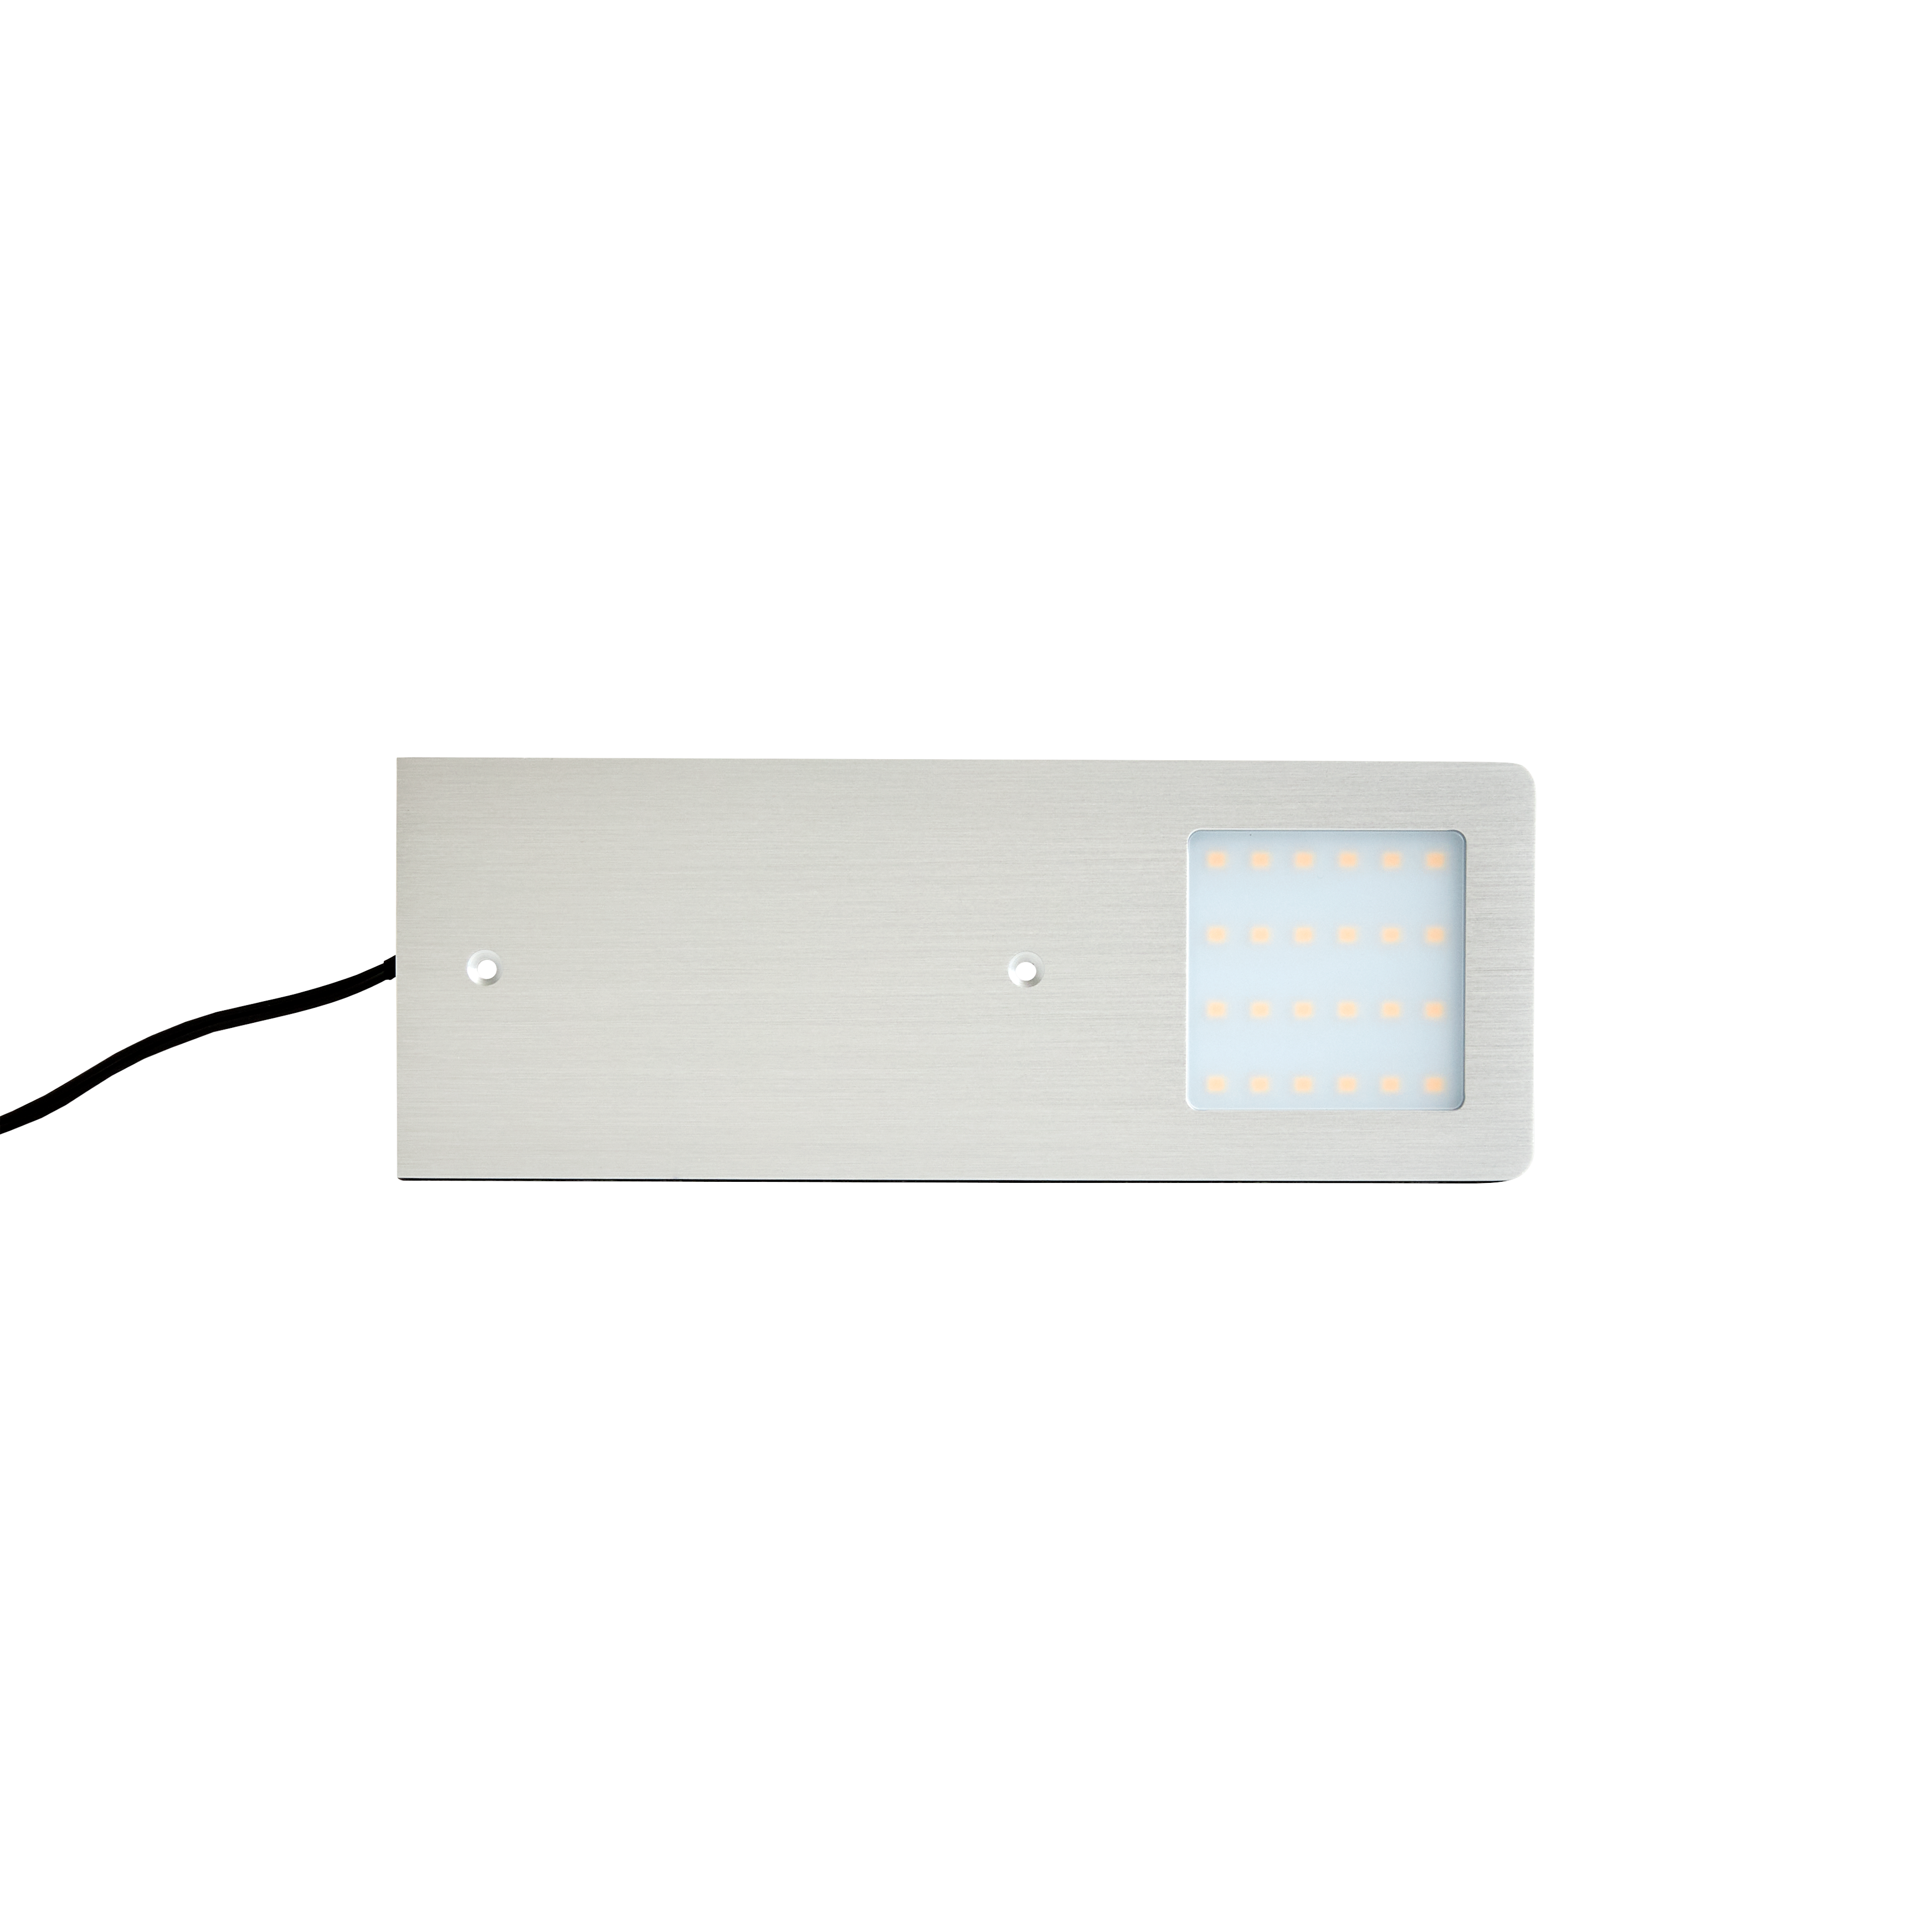 LED Spott platt Warmwhite 12V/5,3W Aluminium